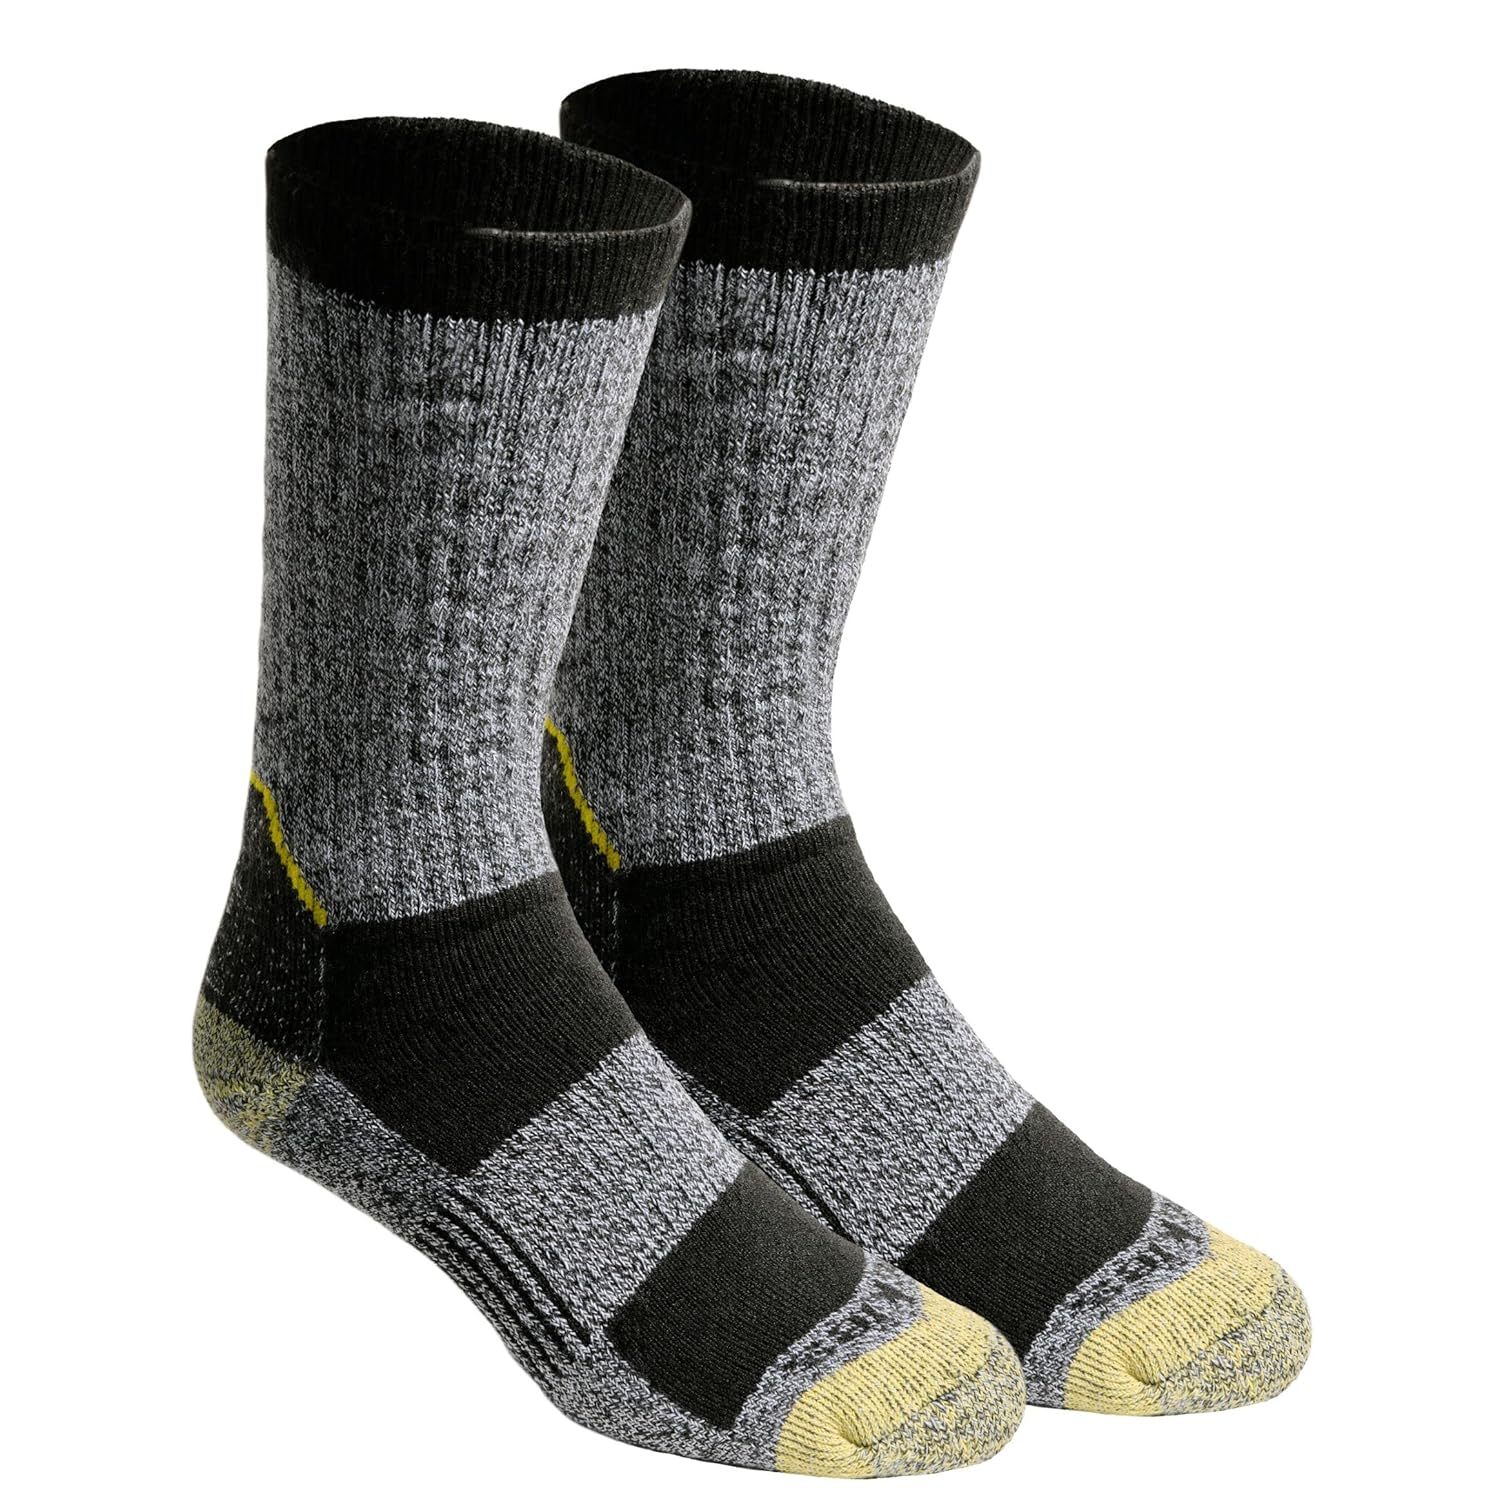 Primary image for Dickies Men's Kevlar Reinforced Steel Toe Crew Socks, Black (2 Pairs), Shoe Size